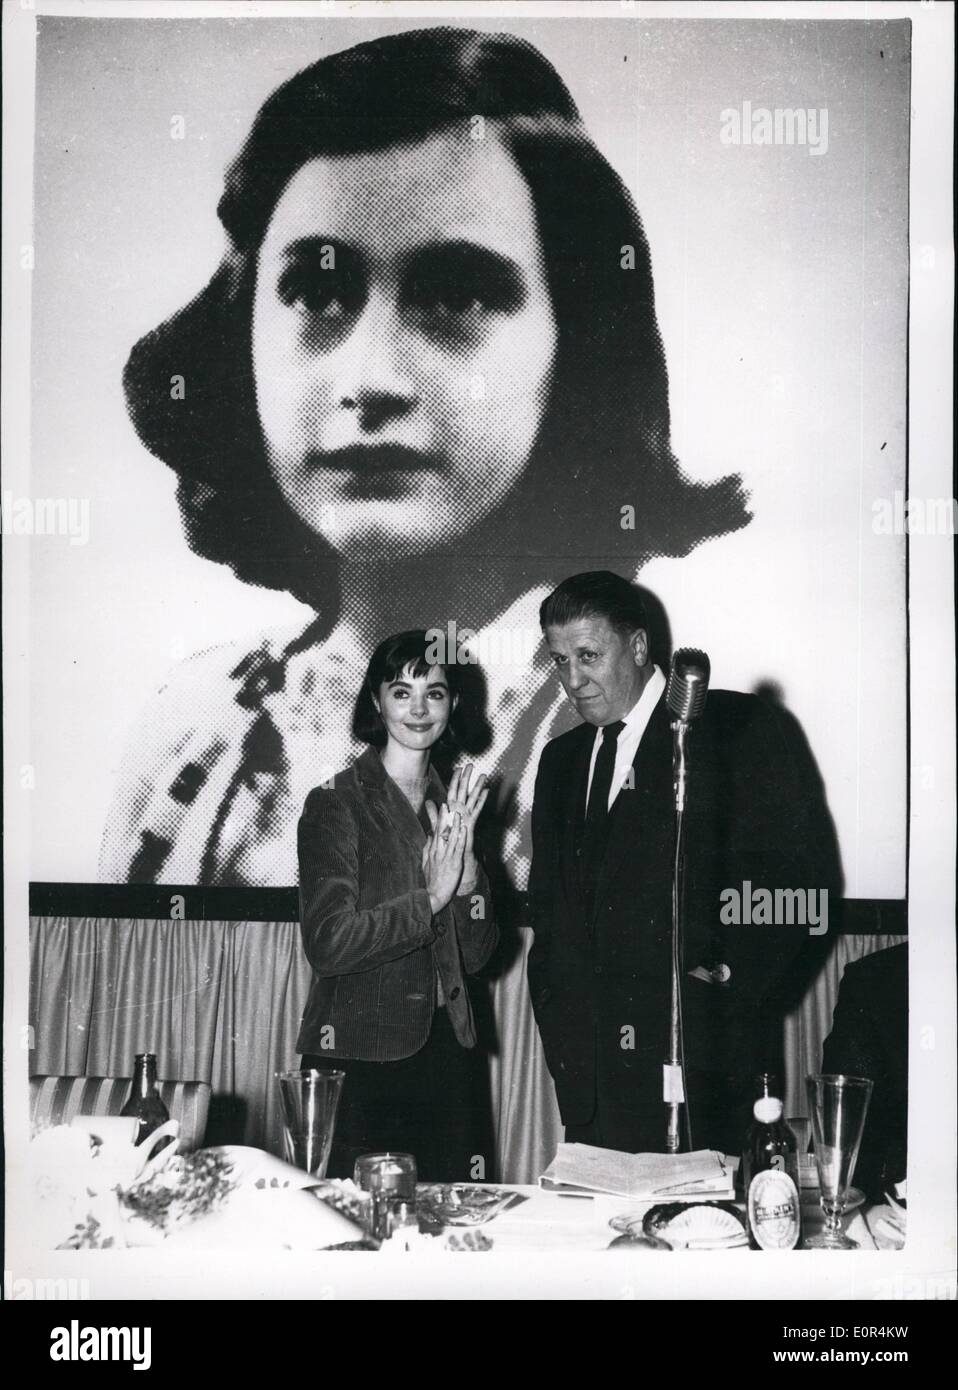 2. Februar 1958 - Magazin-Cover-Girl gewählt, um die Hauptrolle im Film '' The Diary Of Anne Frank"spielen: Achtzehn Jahre alten amerikanischen '' decken Mädchen '' hat Millie Perkins auserkoren, spielen die Hauptrolle in der Verfilmung von"The Diary Of Anne Frank'' - arbeiten an der im März in Amsterdam beginnen soll. Millies wurde von 10.225 Bewerberinnen für die Rolle ausgewählt. Foto zeigt George Stevens der Hersteller - führt Millie Perkins - im Rahmen eines Pre-Dreharbeiten Empfangs auf Stufe 14 of 20th Century Fox Studios - in Hollywood. Stockfoto